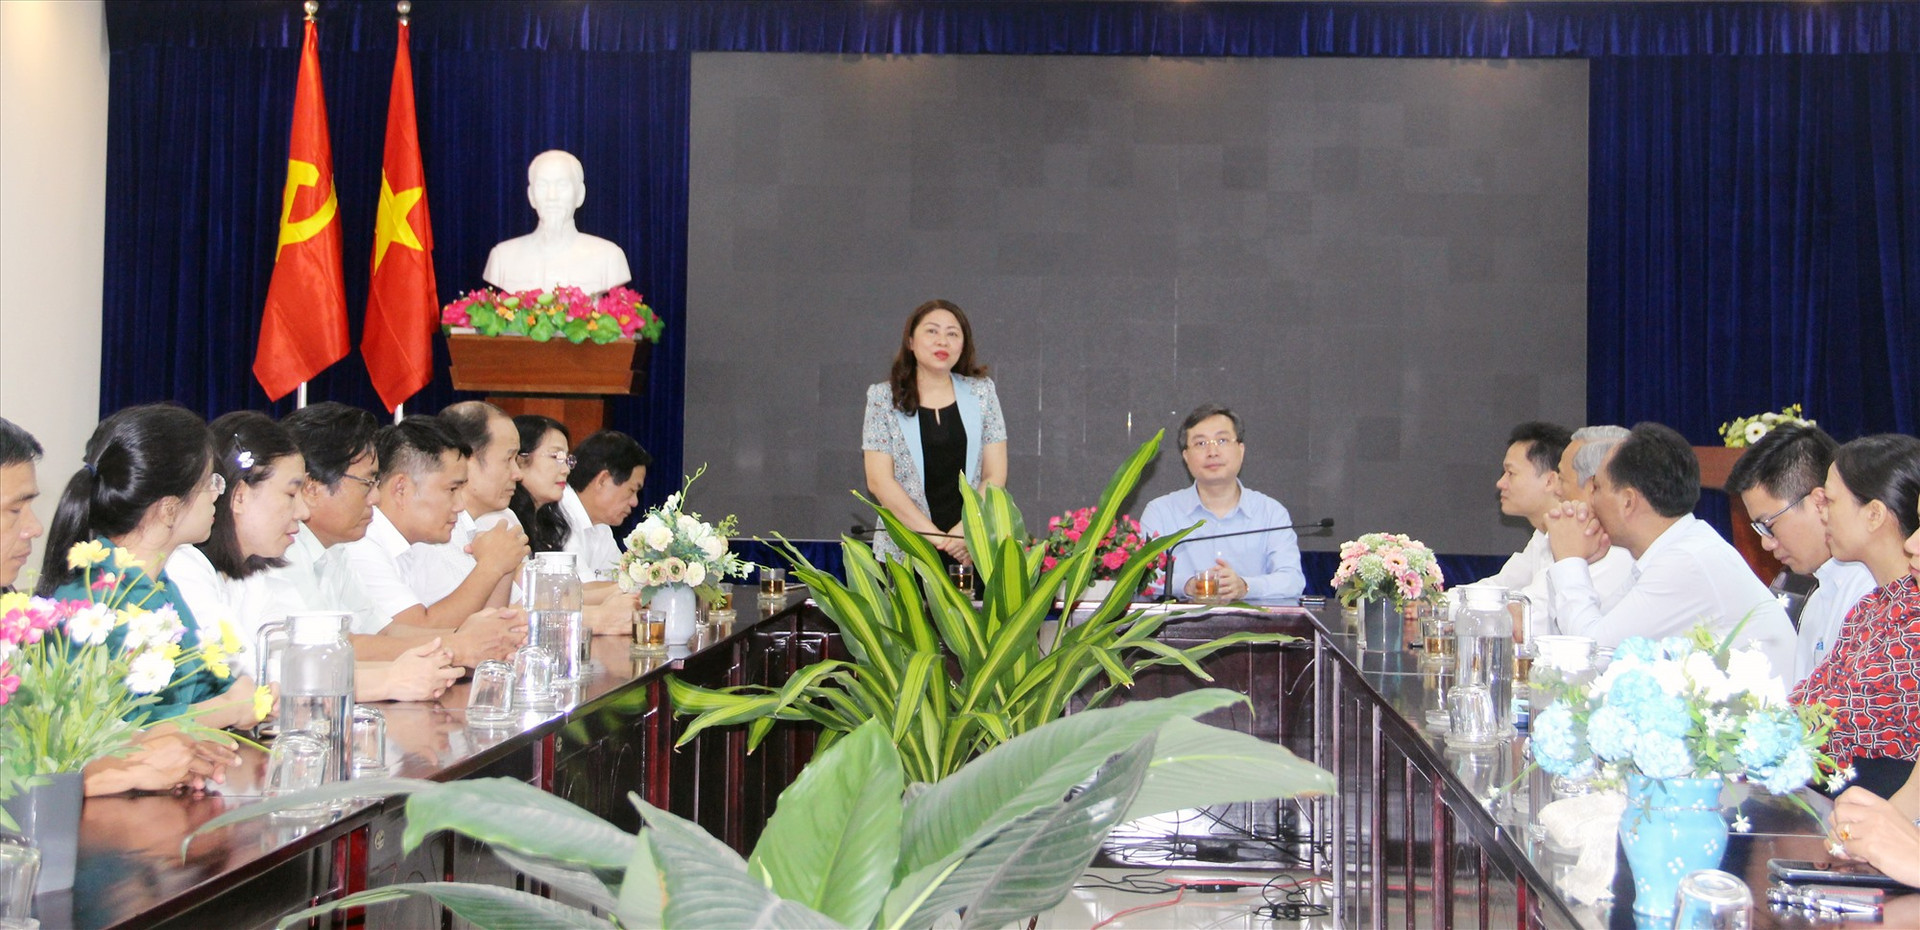 Trưởng ban Tuyên giáo Tỉnh ủy Nguyễn Thị Thu Lan phát biểu tại buổi làm việc với đoàn công tác Ban Tuyên giáo Trung ương. Ảnh: T.G